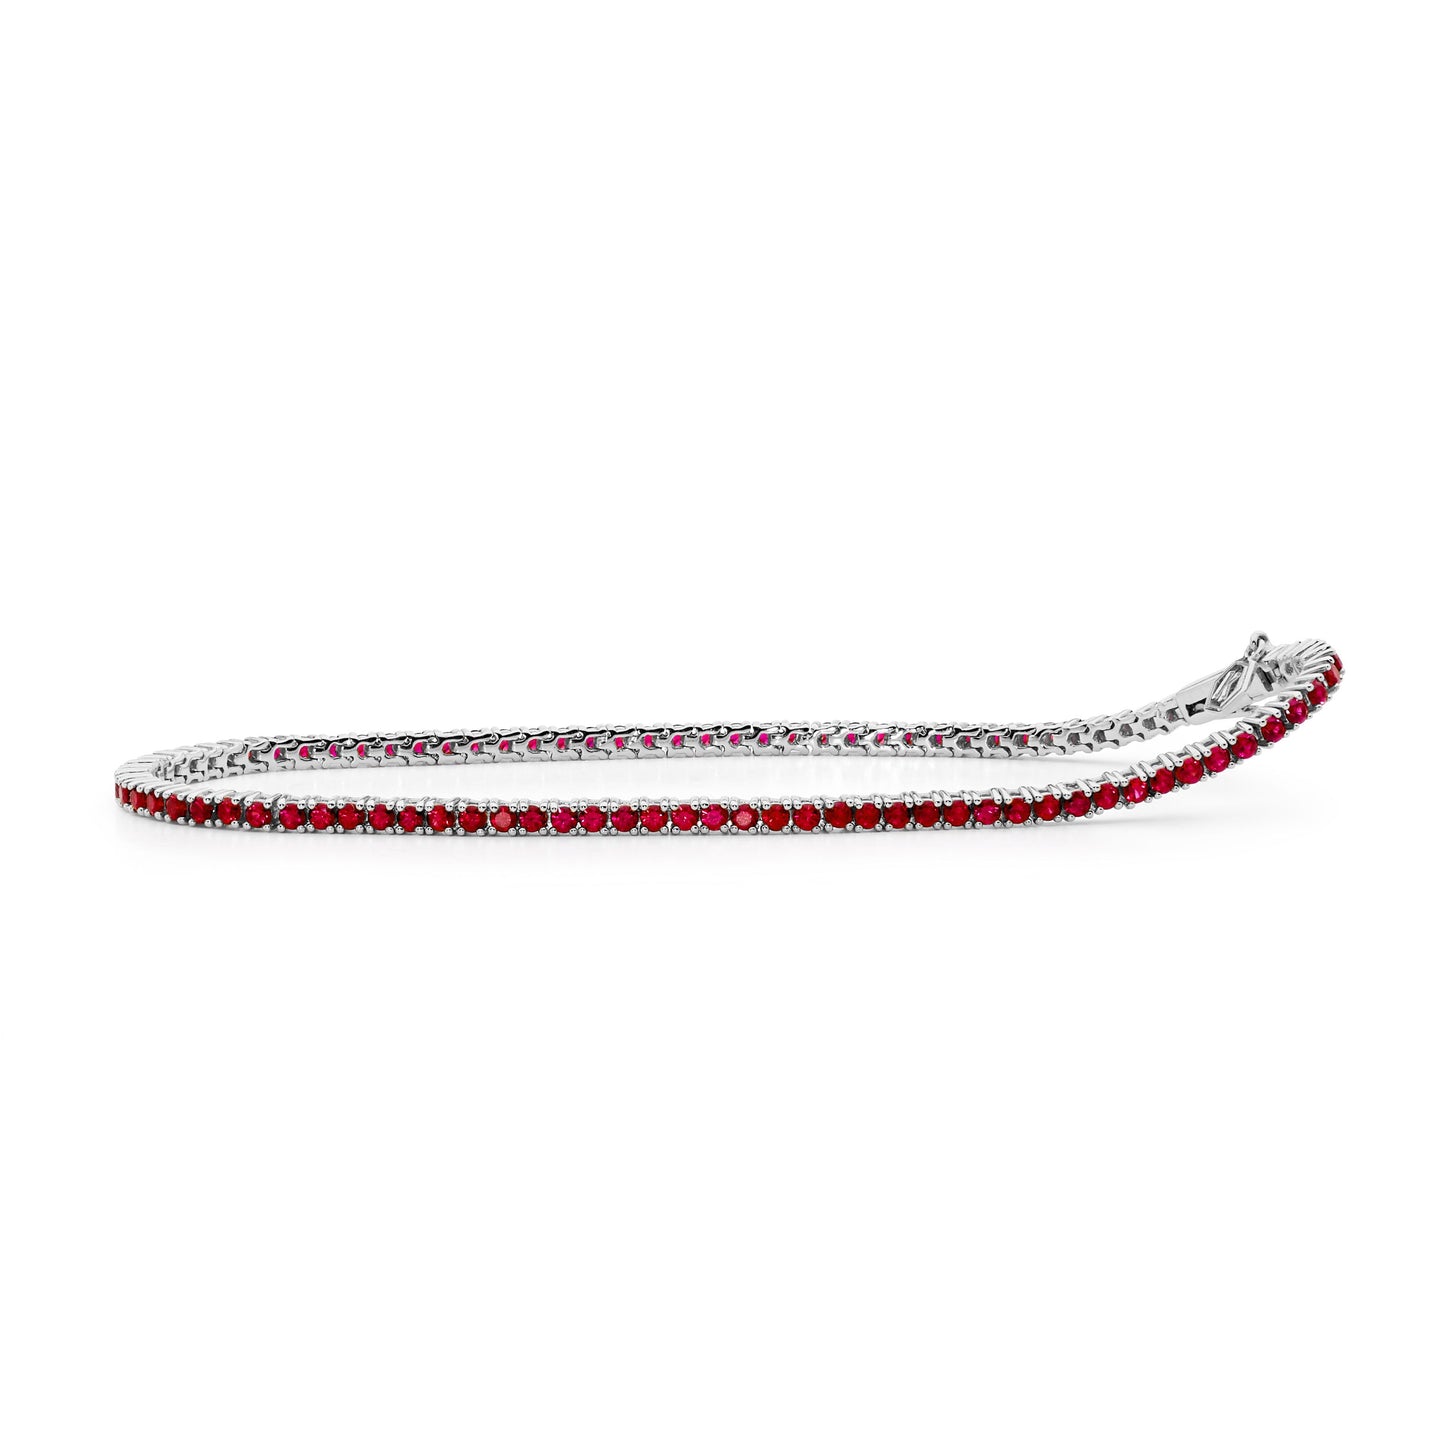 4-Claw Tennis Bracelet